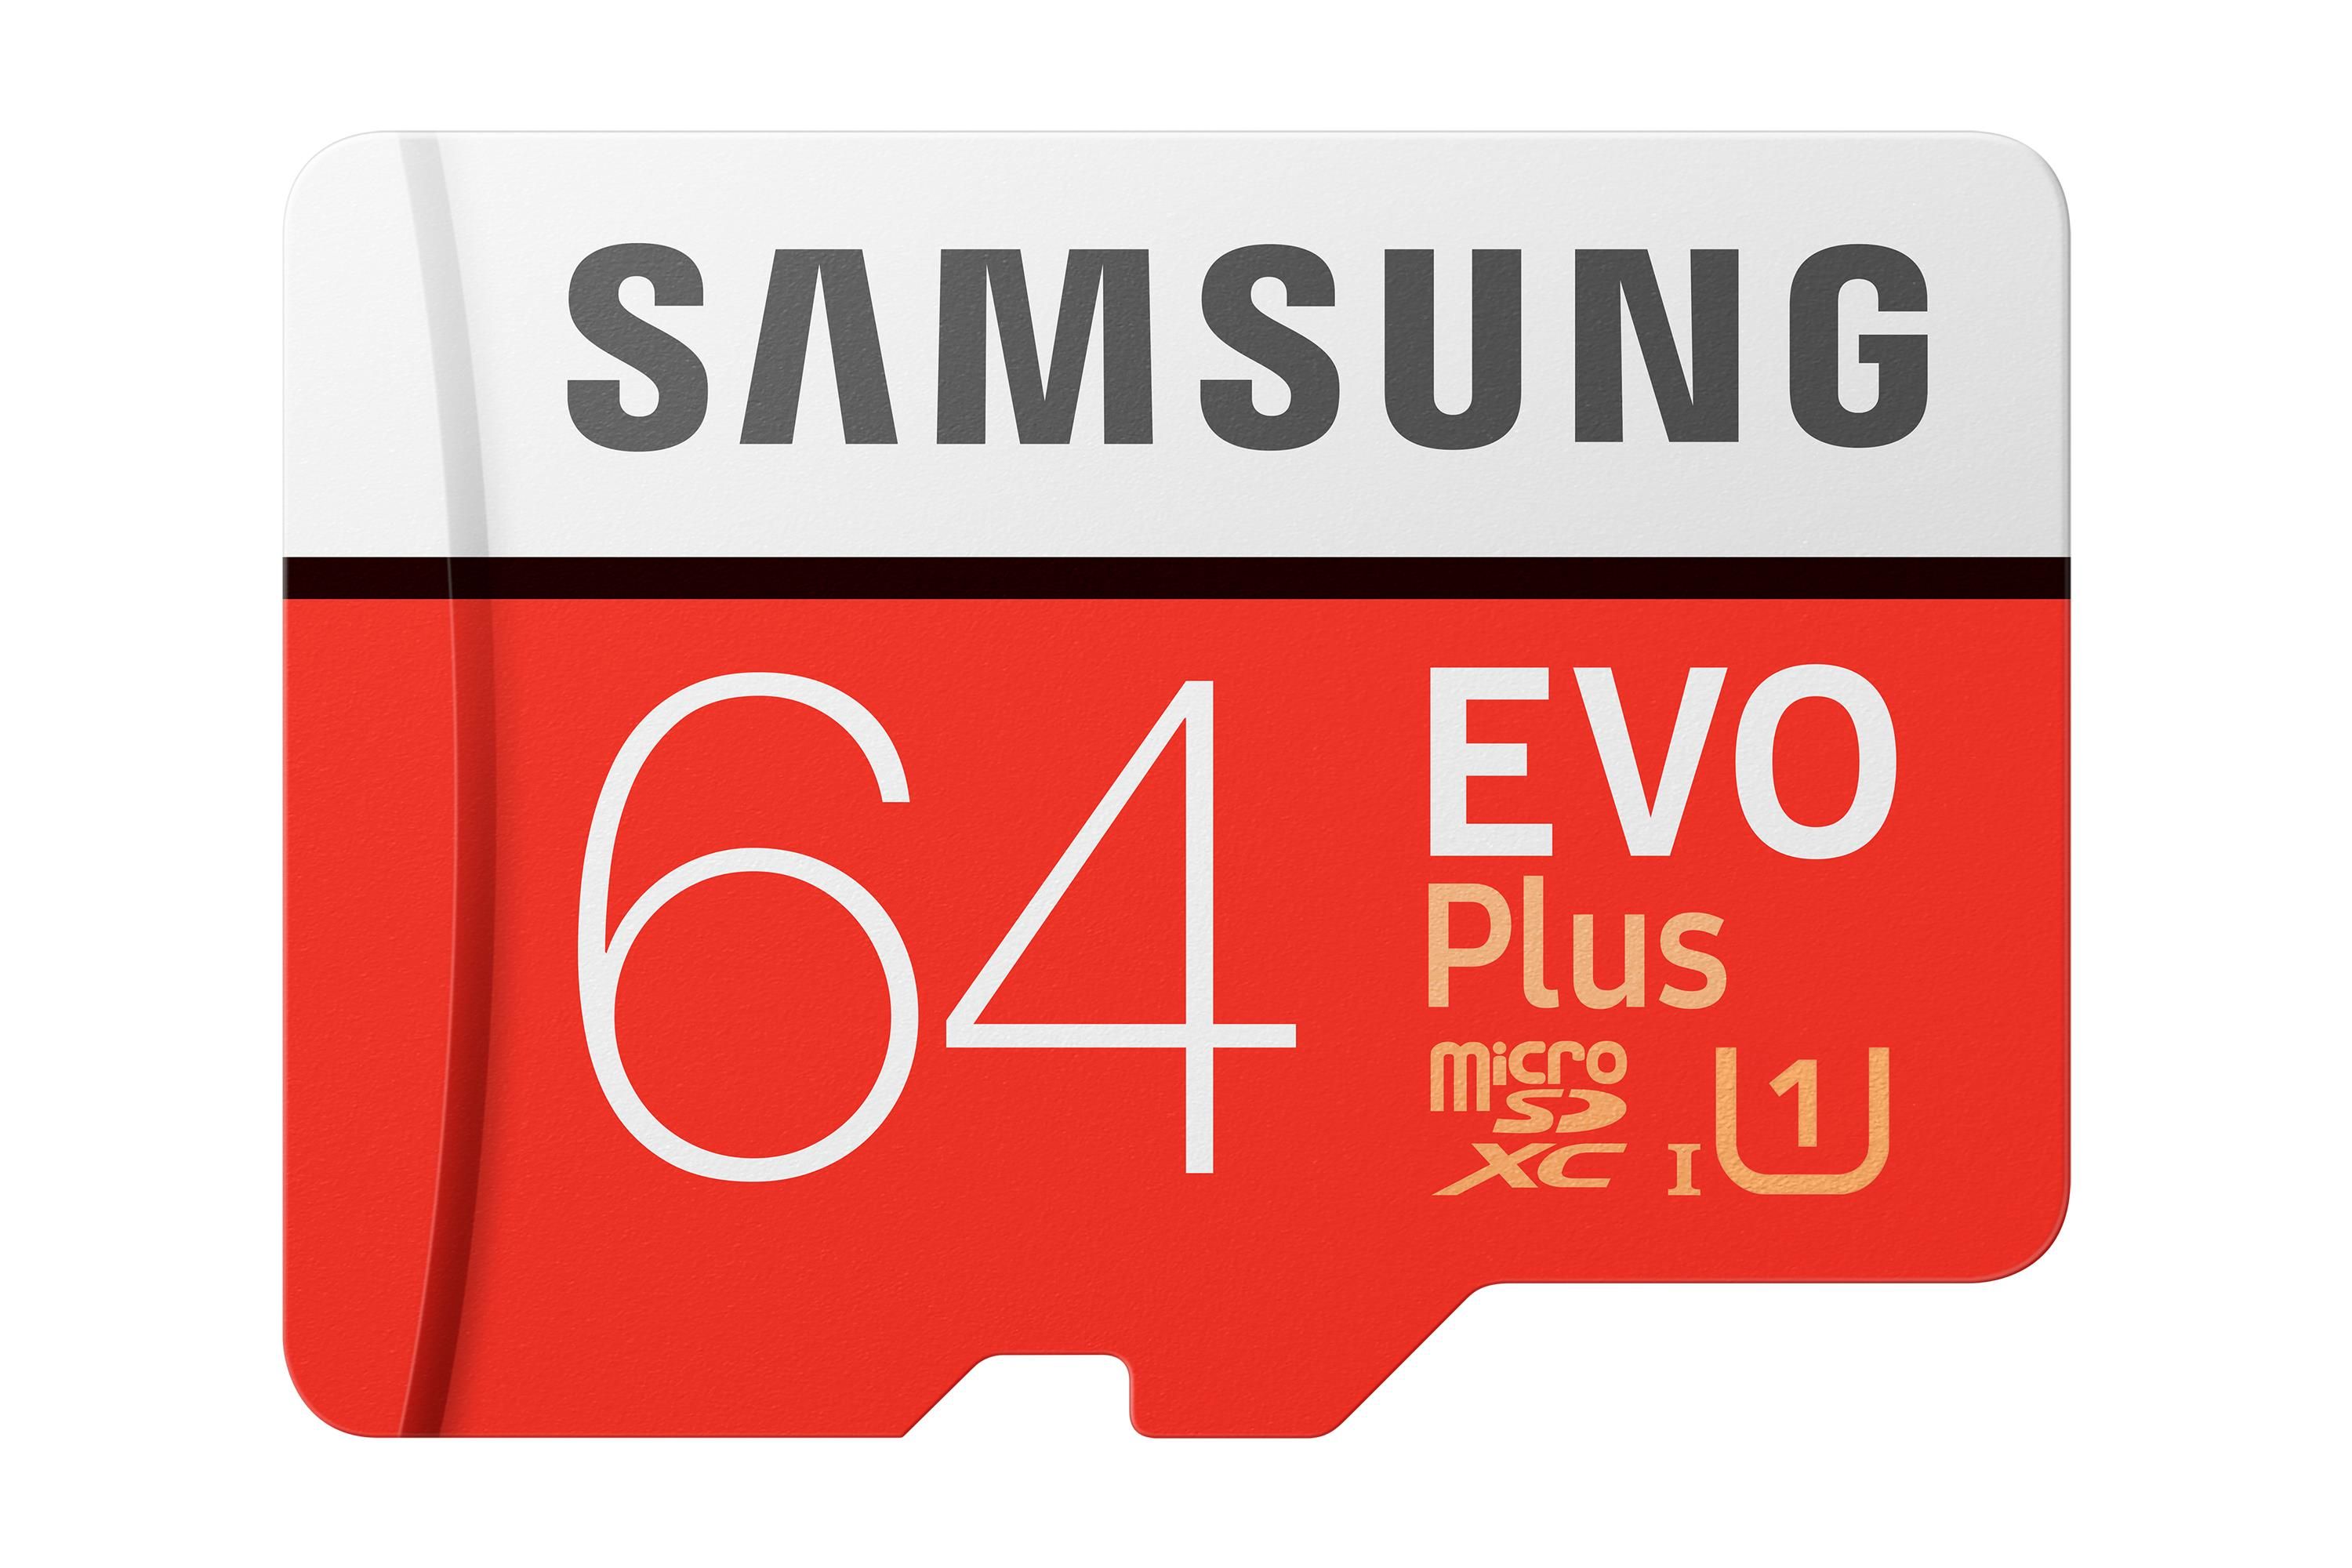 Samsung Evo Plus 2020